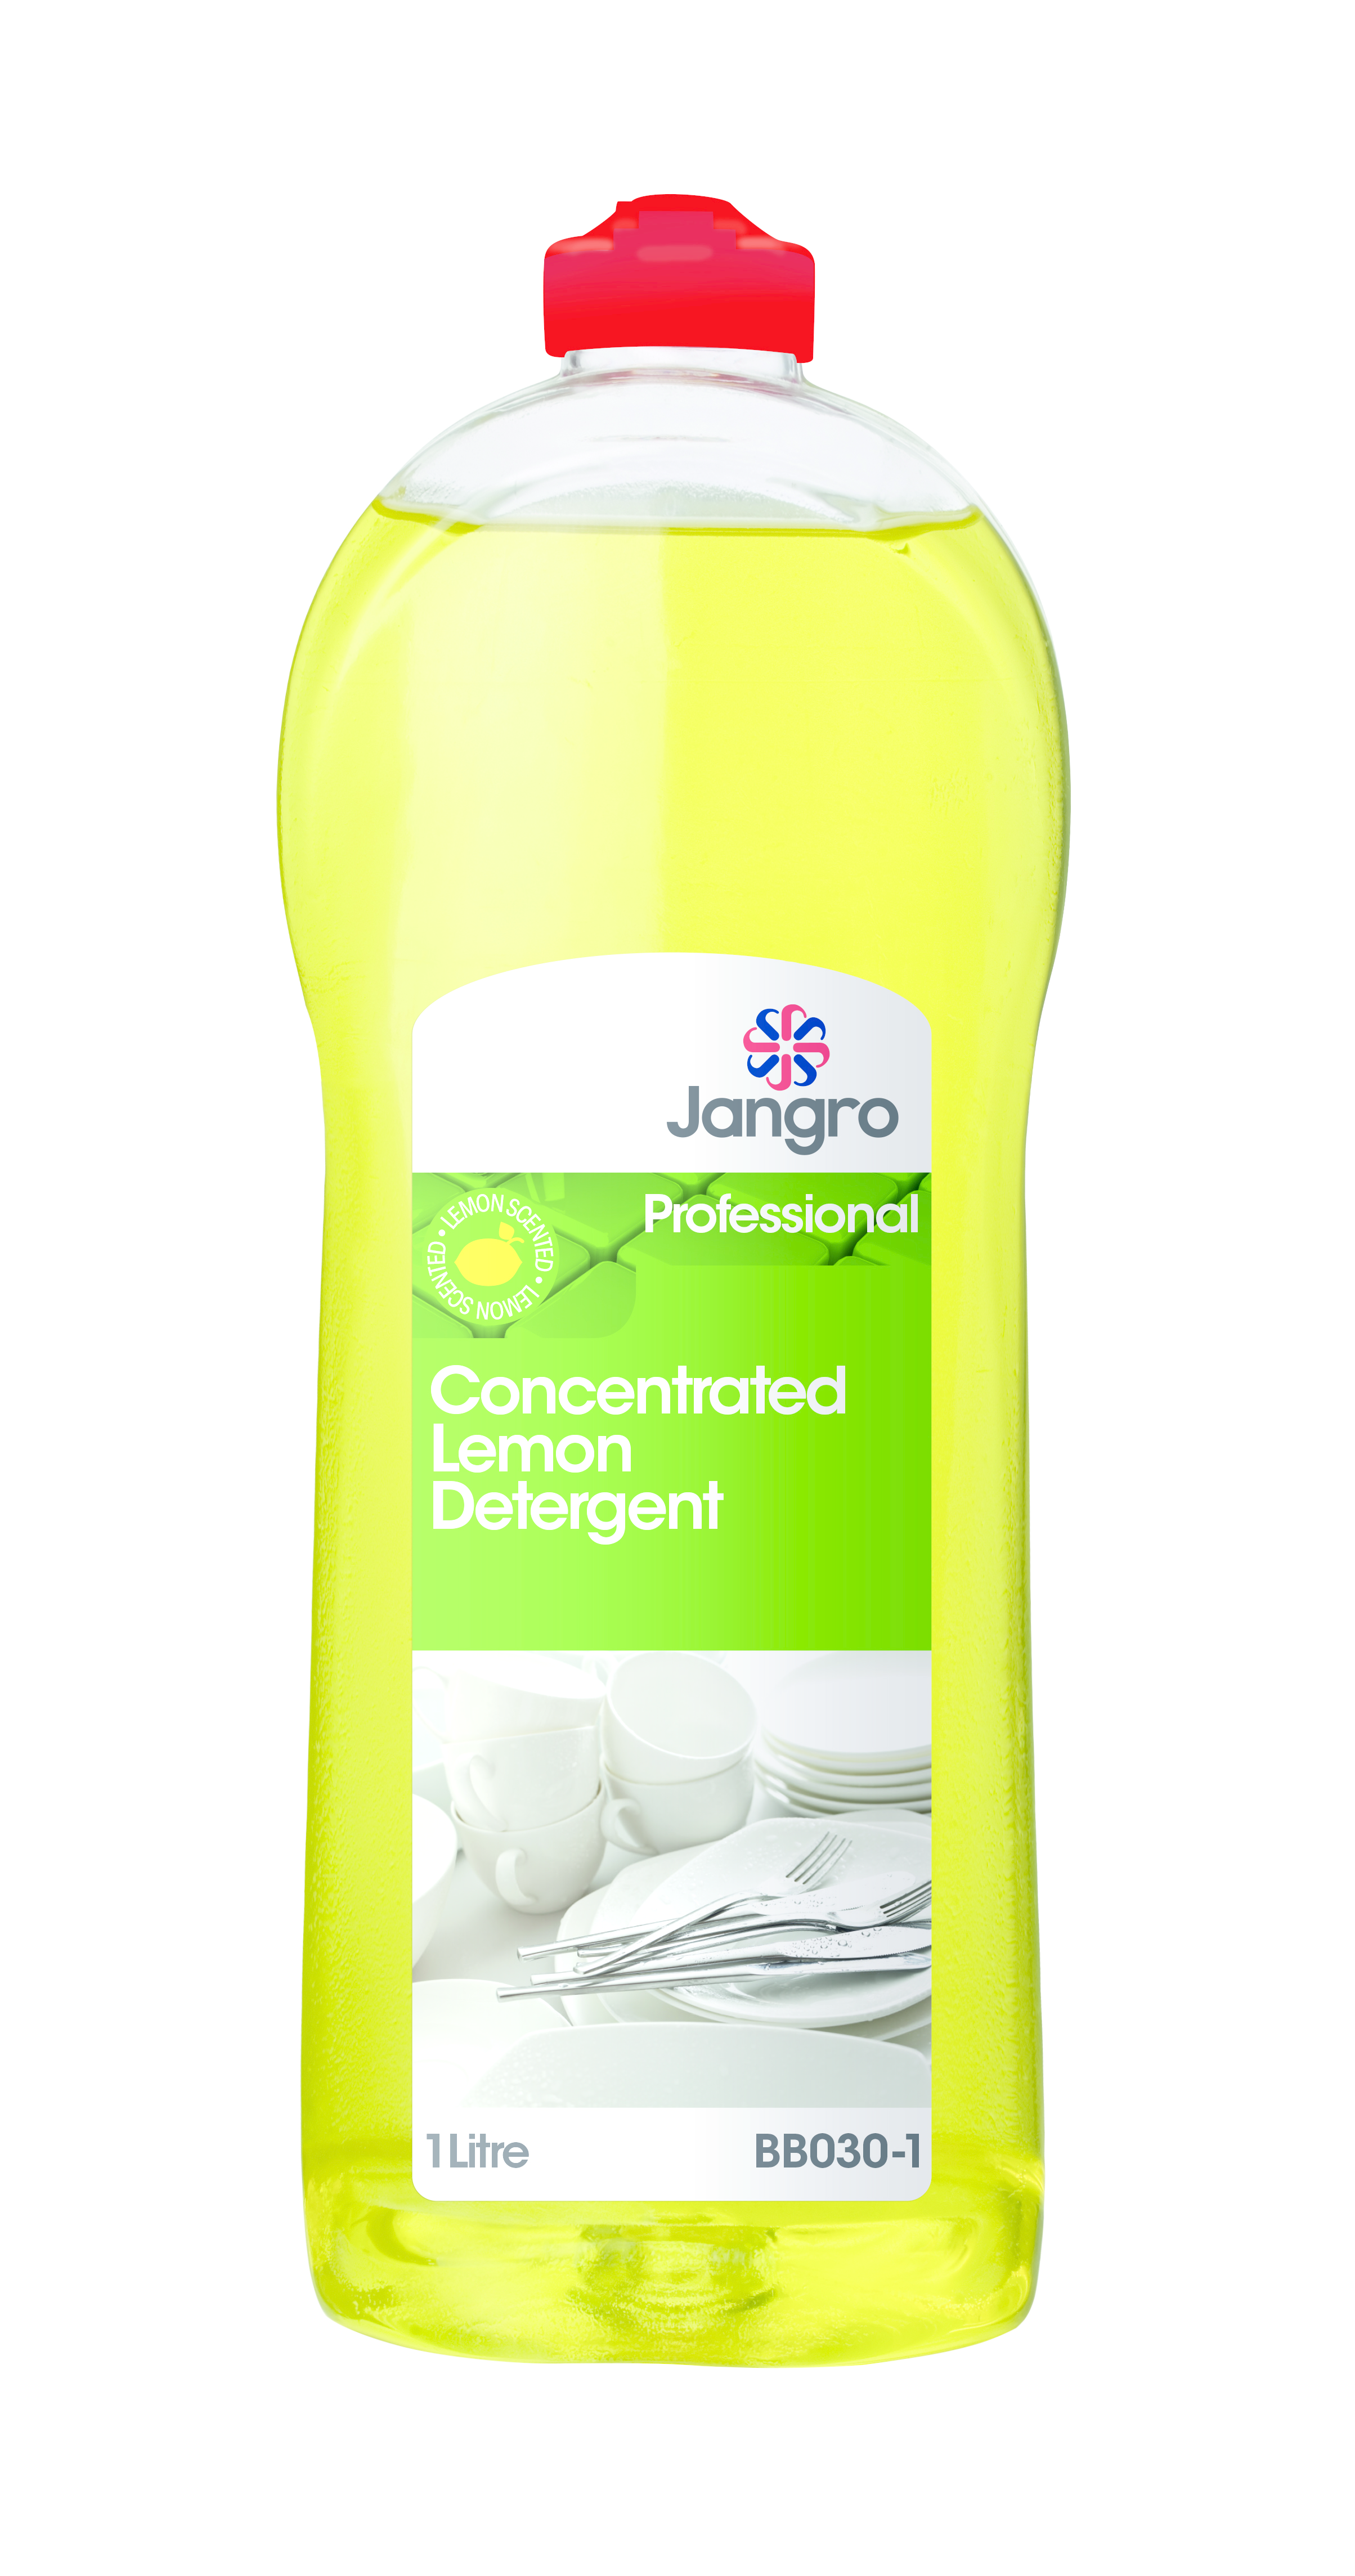 Concentrated Lemon Detergent 1-litre